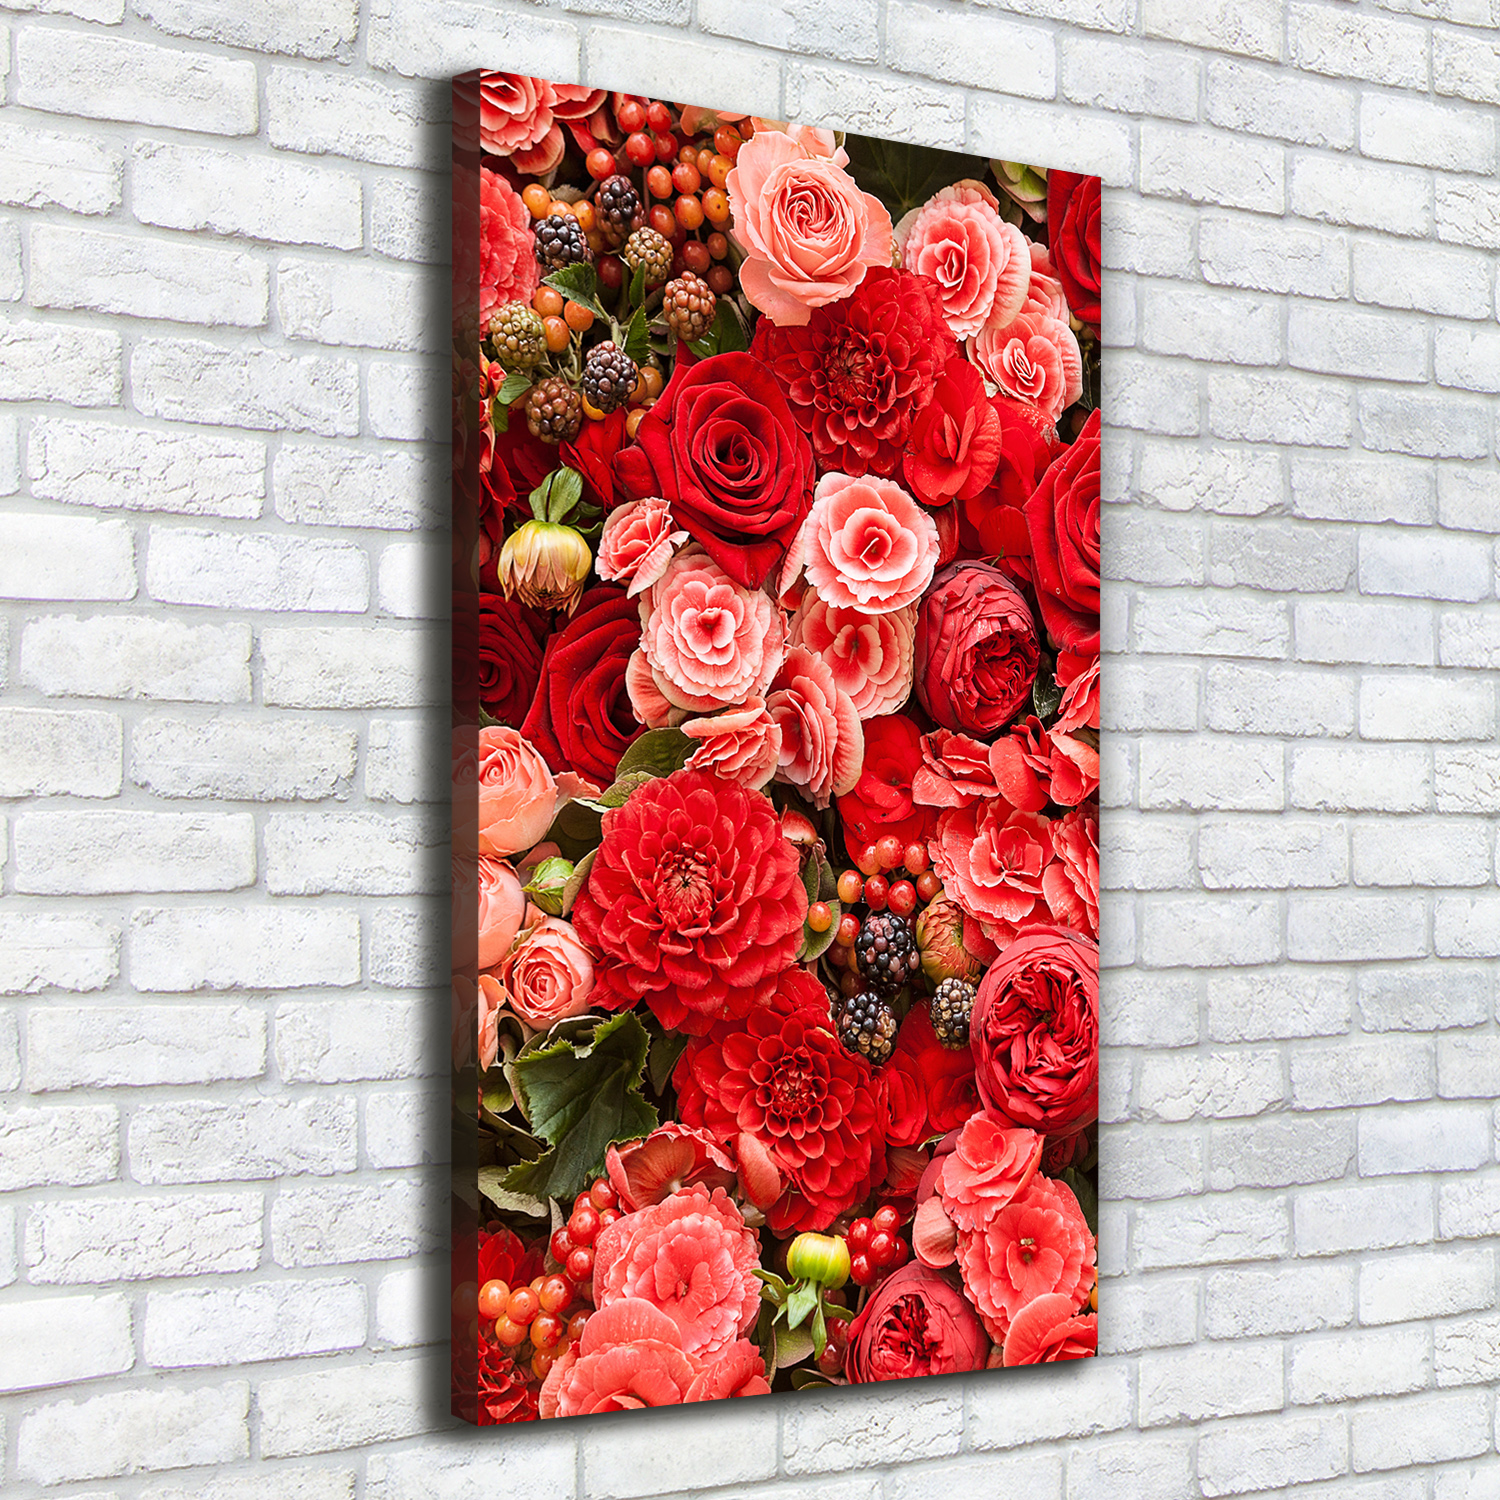 Leinwand-Bild Kunstdruck Hochformat 50x100 Bilder Blumenstrauß